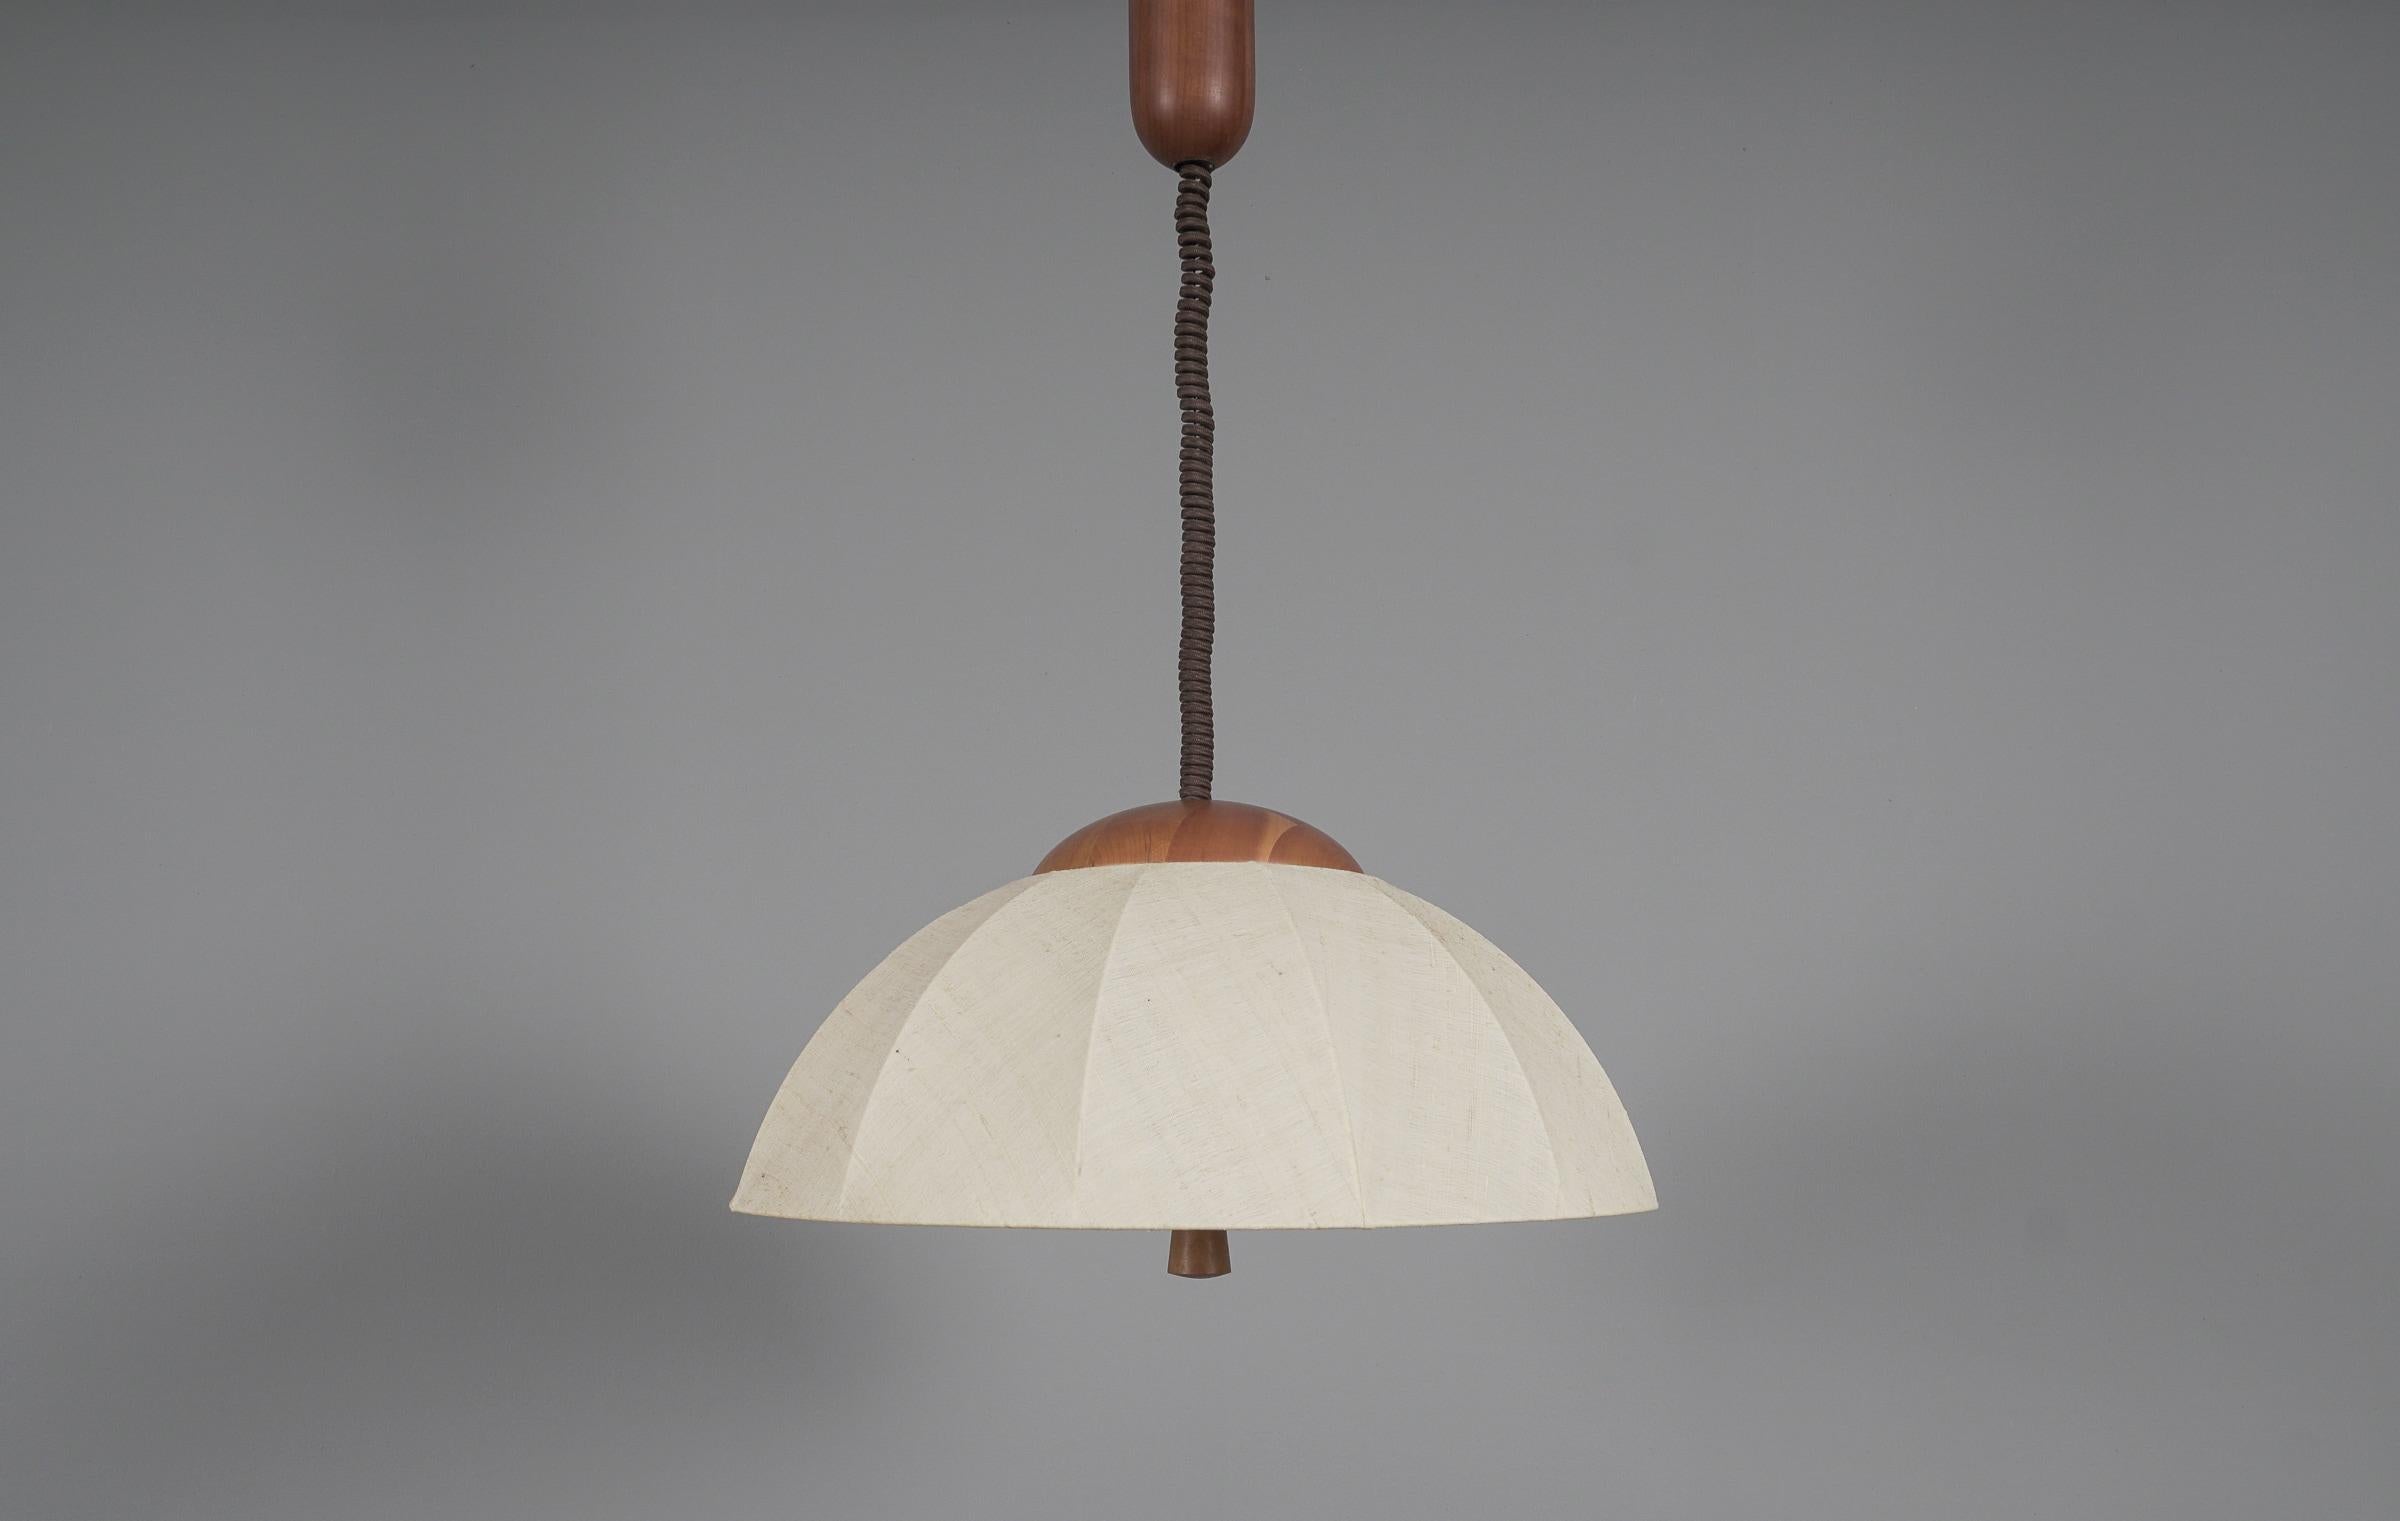 
Die Lampe kann von 75 bis 175 cm Höhe verstellt werden.

Ausgeführt in Rattan und Holz, die Pendelleuchte kommt mit 2 x E27 / E26 Edison Schraube fit Glühbirnenfassung, ist verkabelt und in betriebsbereitem Zustand. Es läuft sowohl mit 110/230